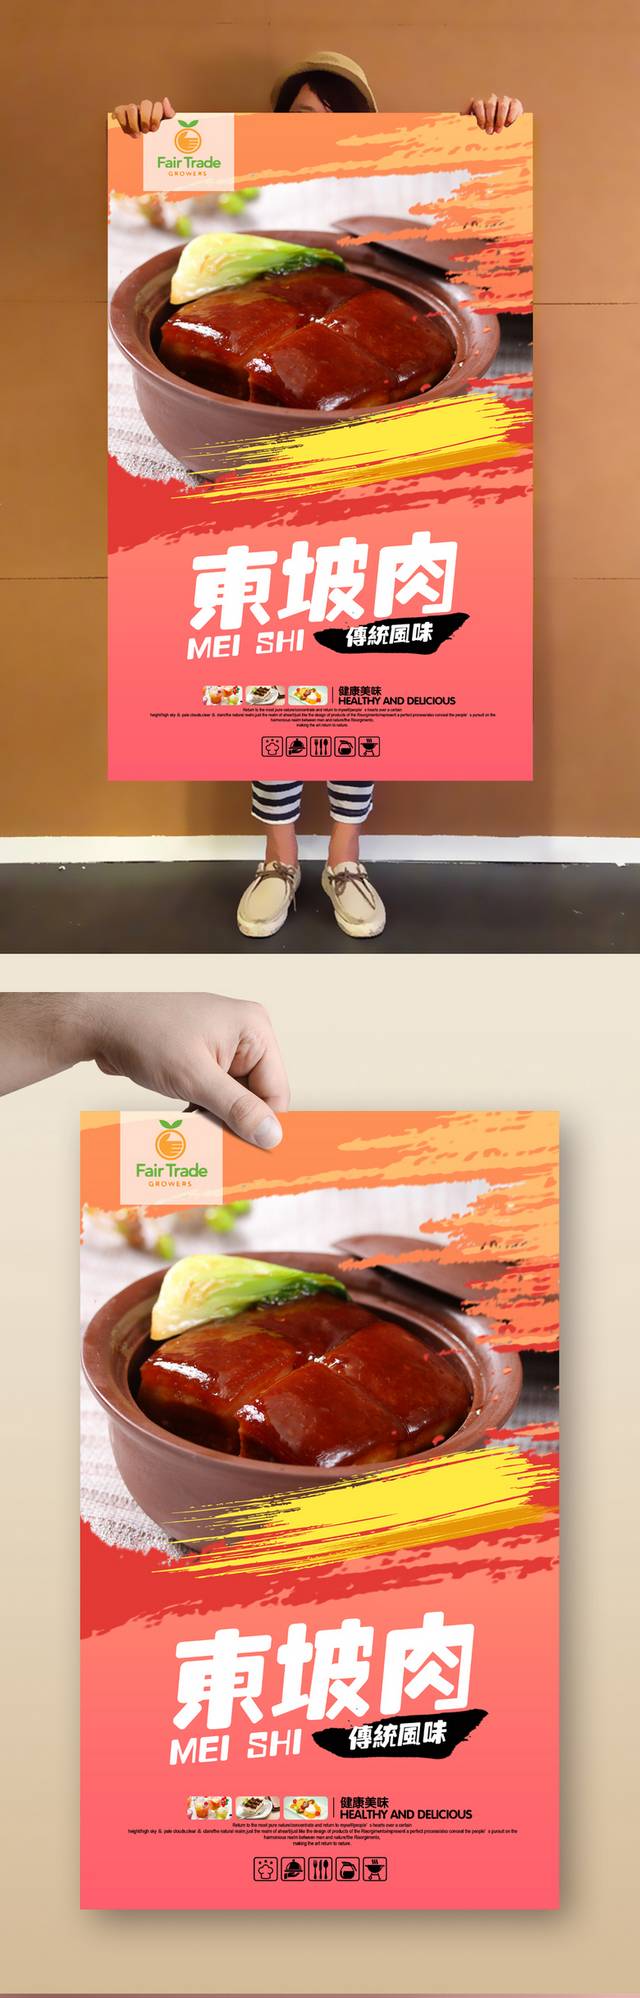 经典东坡肉宣传海报设计psd